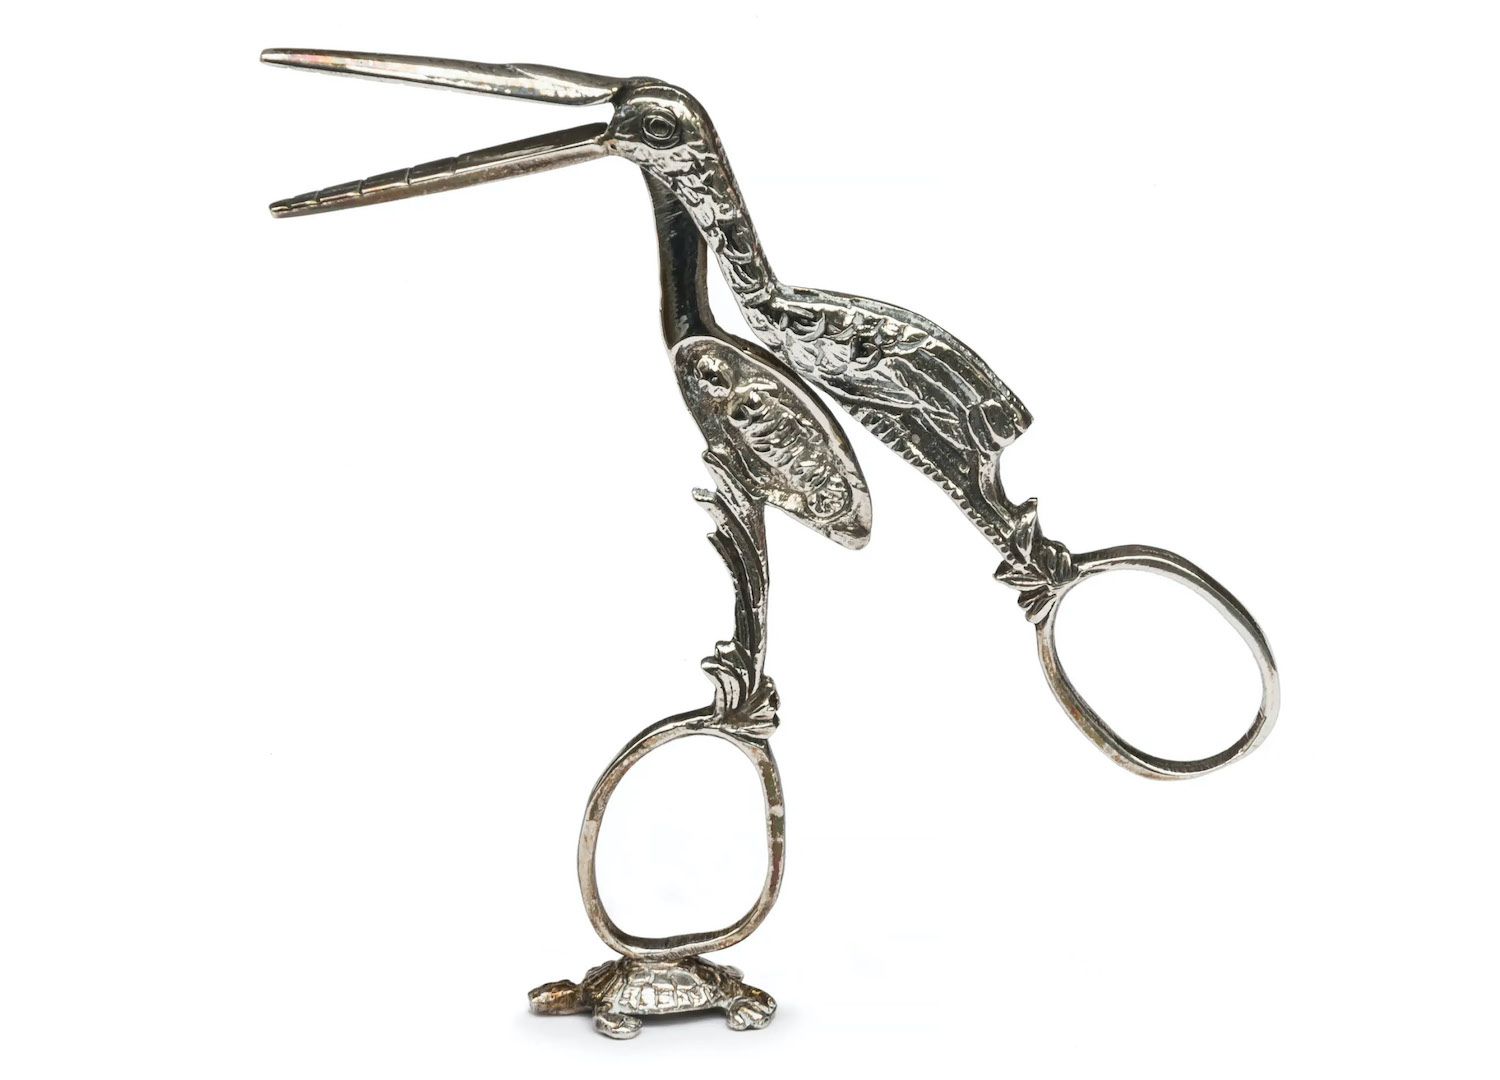 Stork Scissors Needleminder — The Makers Marks